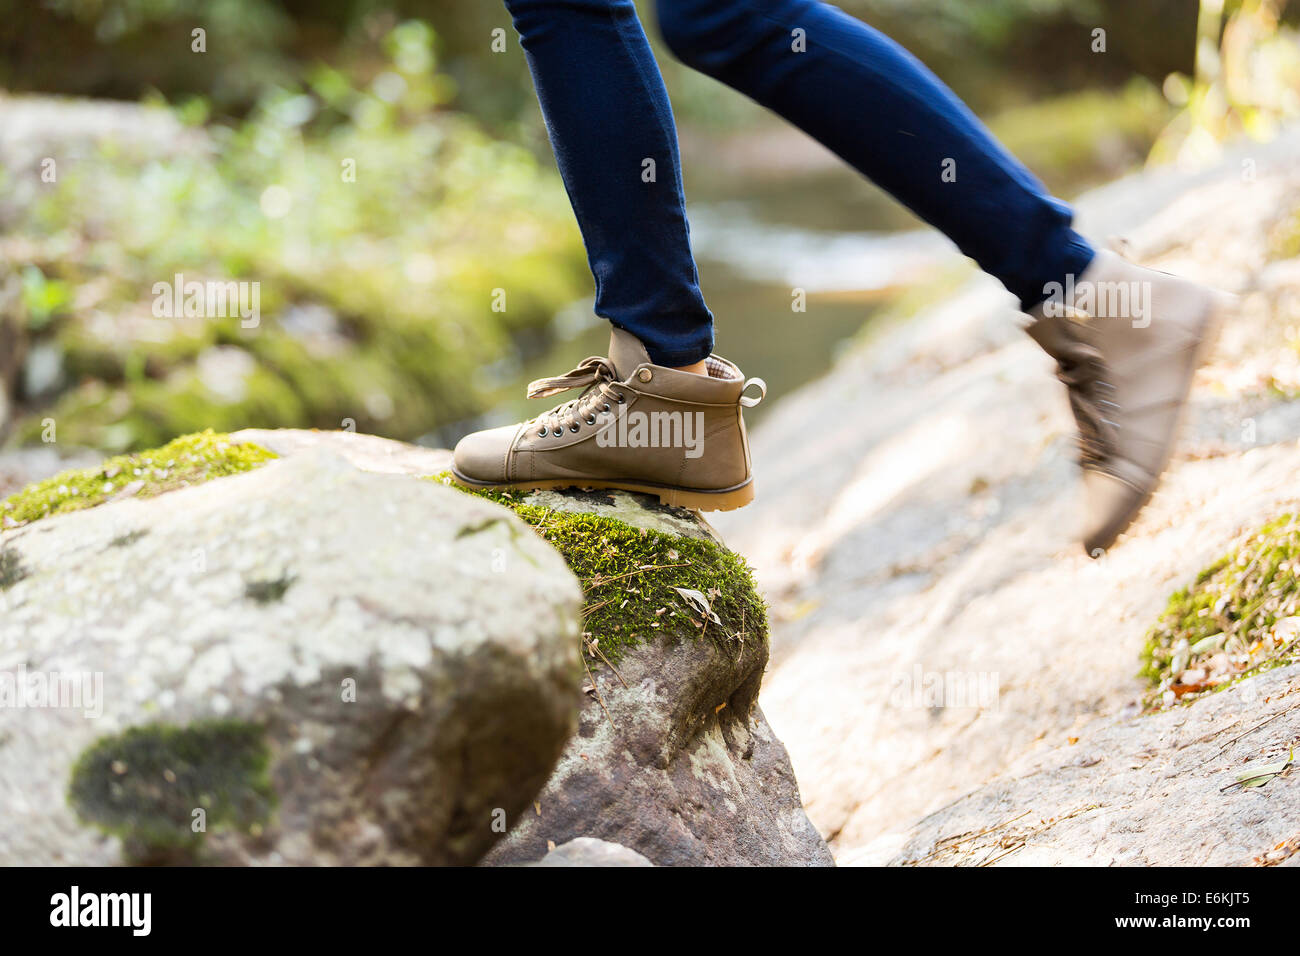 young woman wearing hiking boots mountain climbing Stock Photo